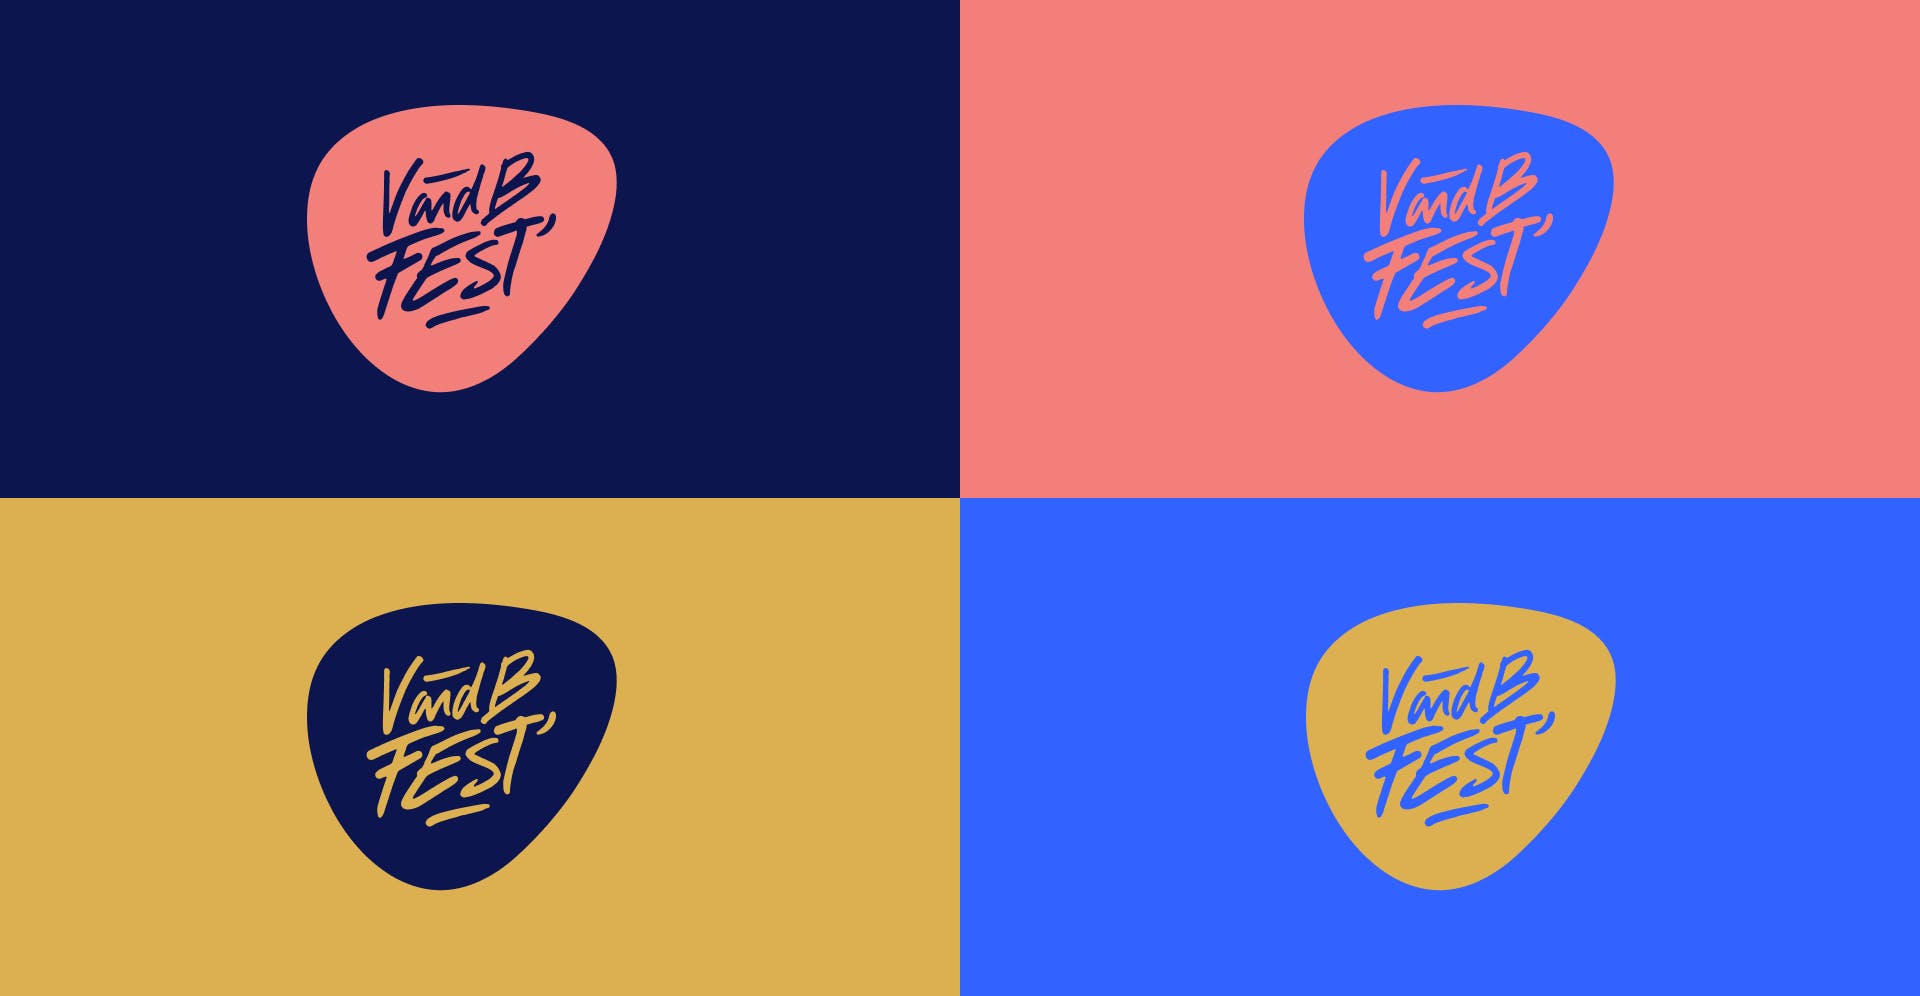 Le logo du V and B Fest décliné selon la nouvelle palette colorimétrique de l'édition 2023.